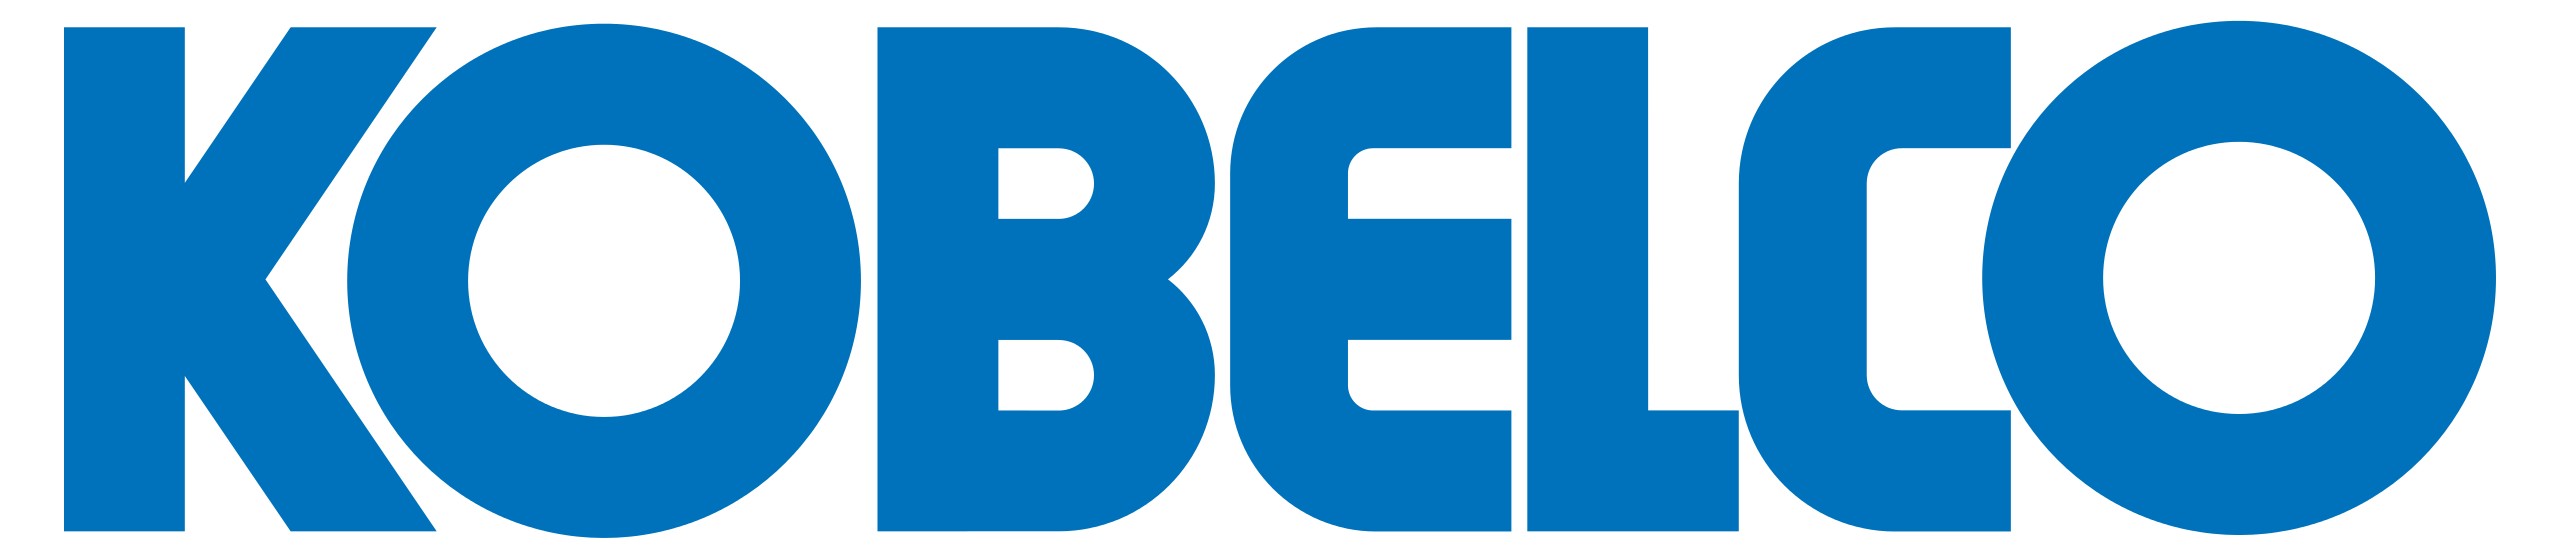 Kobelco_logo.svg